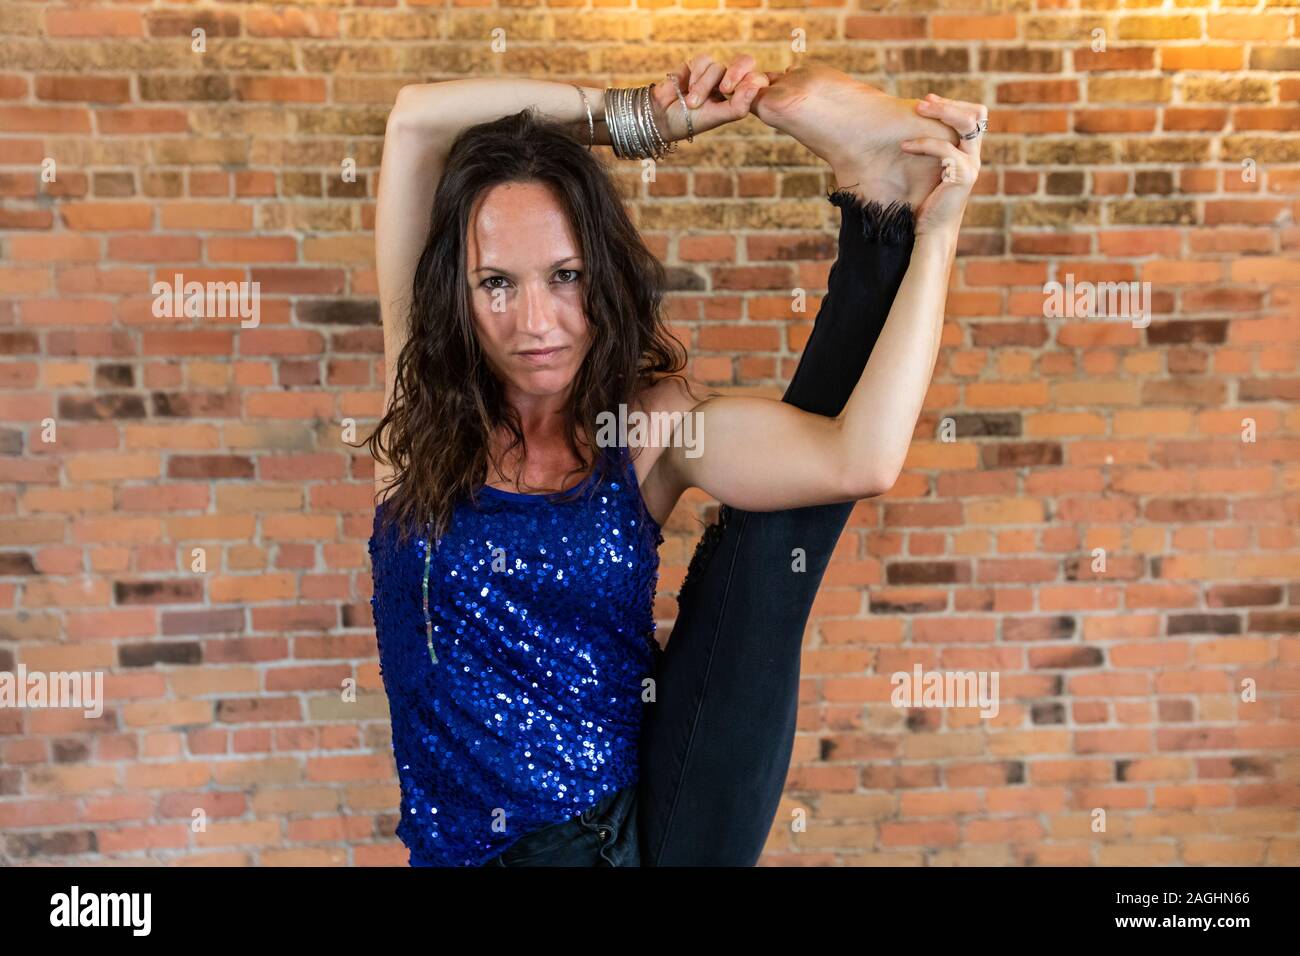 Stern suche Frau, als sie Praktiken, eine anstrengende Vinyasa Yoga Routine in einer Turnhalle gegen eine Orange und Red brick wall Stockfoto